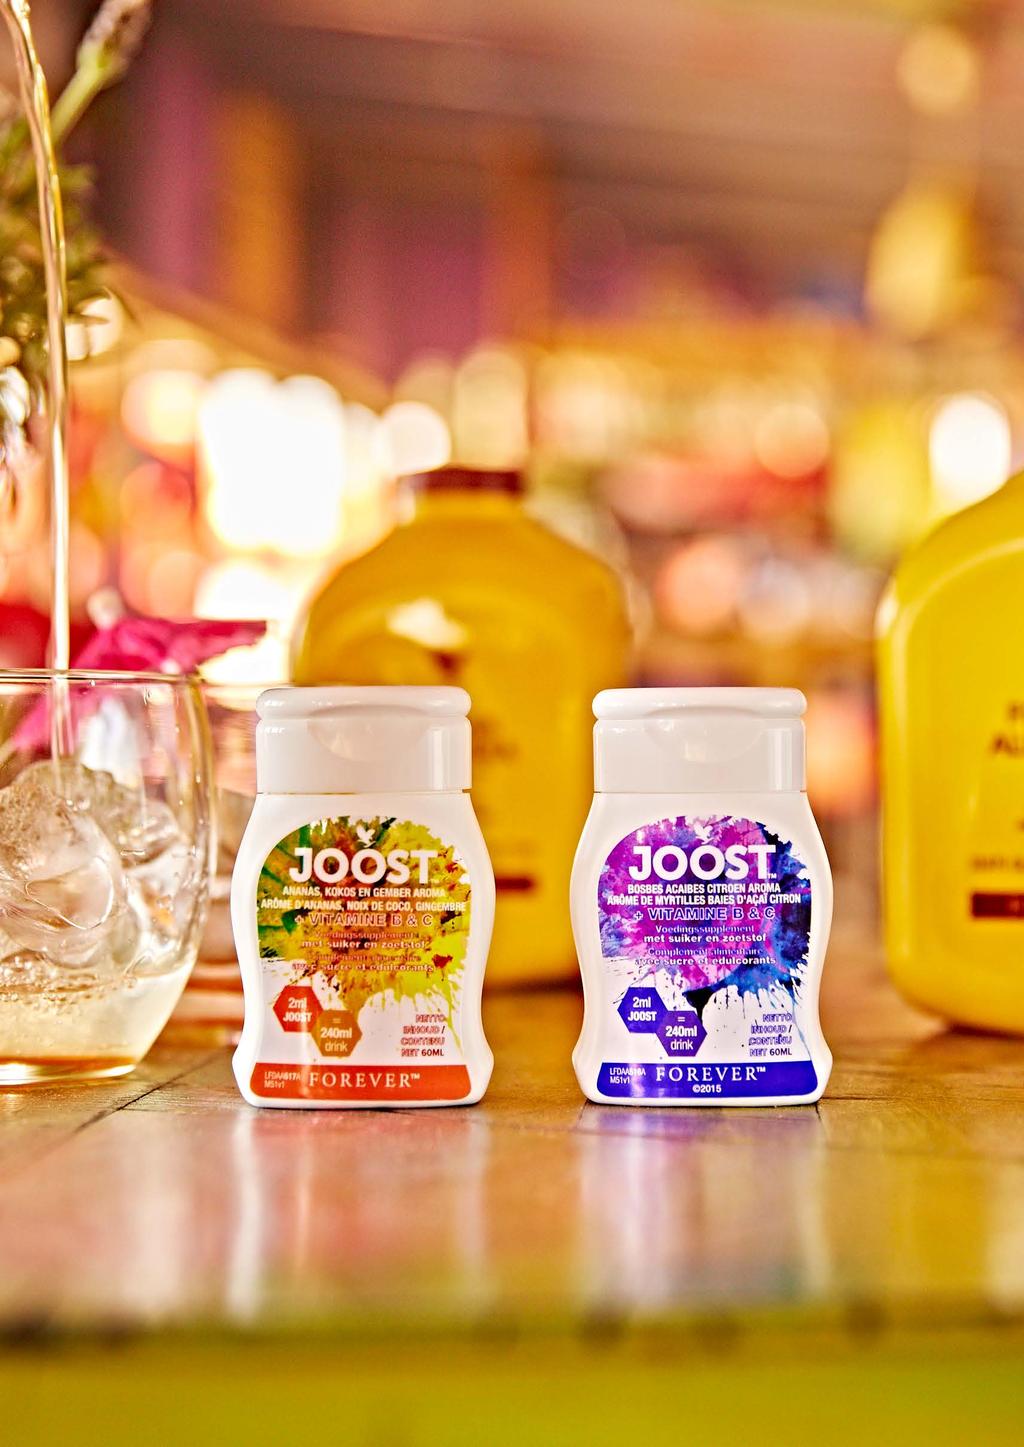 JOOST Met JOOST geeft u extra smaak aan uw drank naar keuze; uw favoriete aloë drank wordt nog lekkerder!